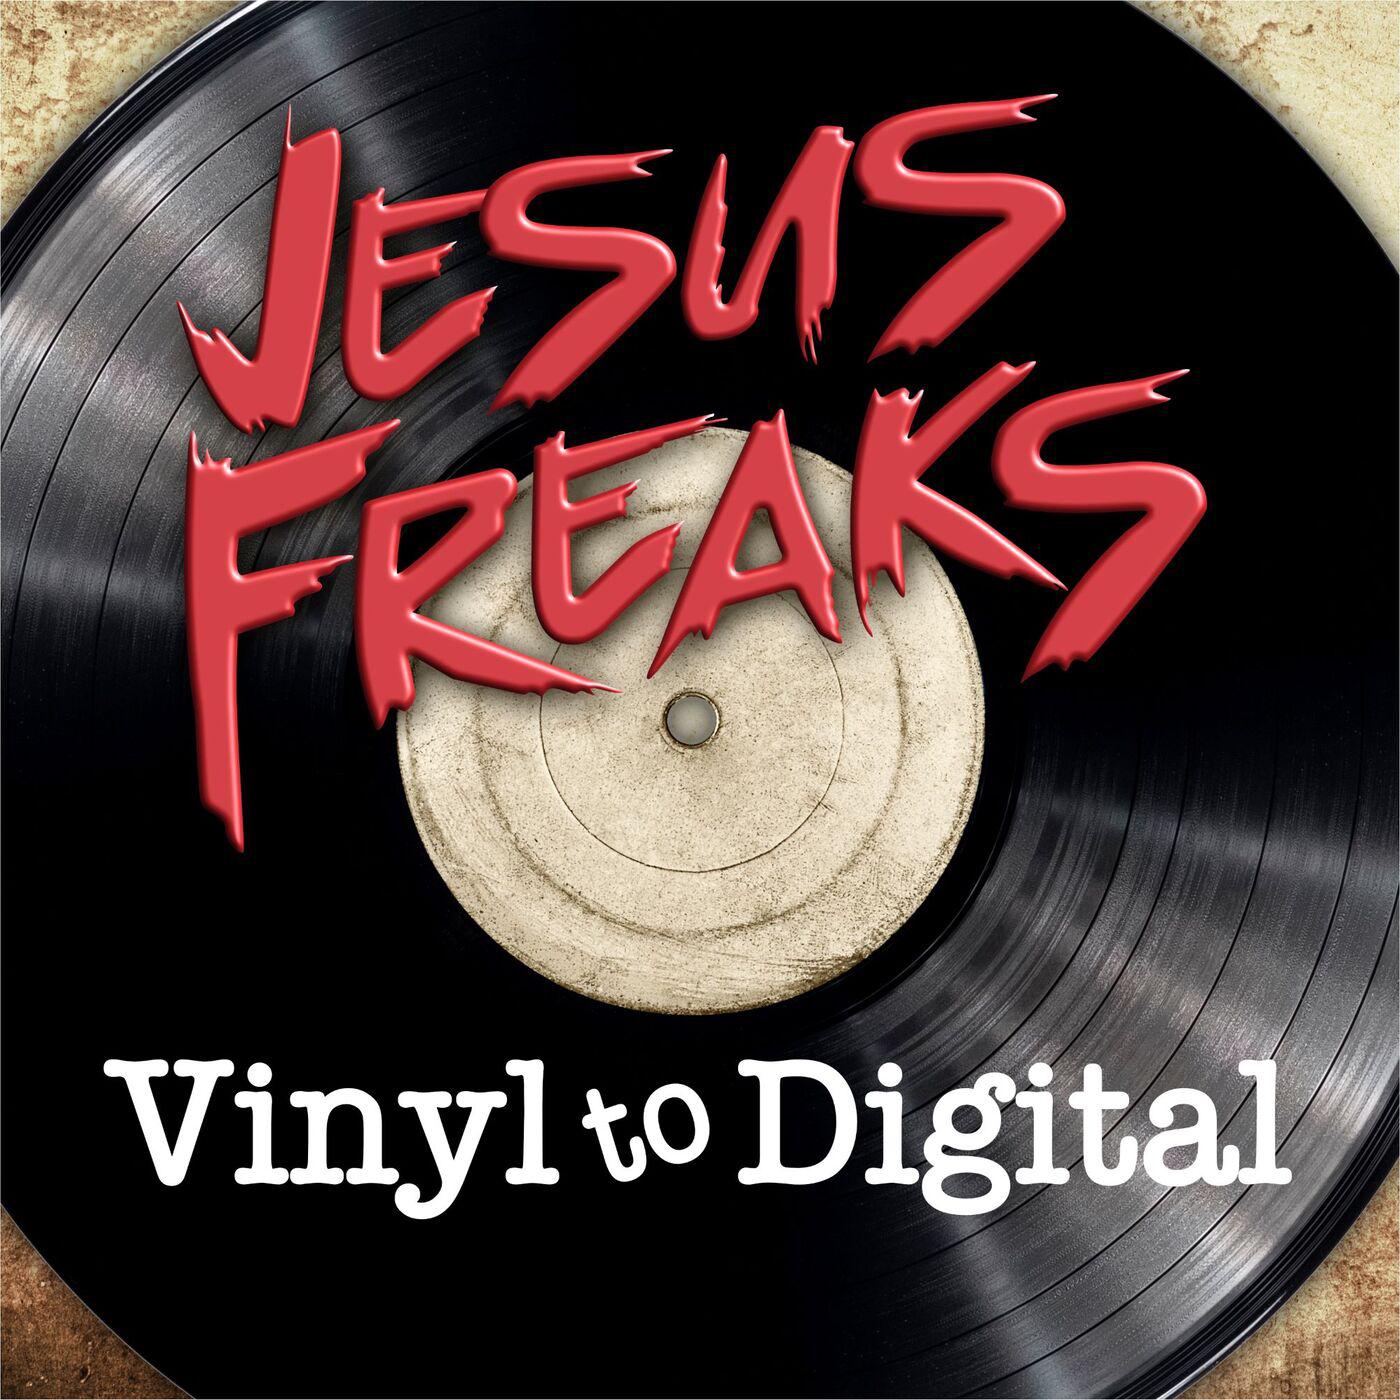 Jesus Freaks: Vinyl to Digital